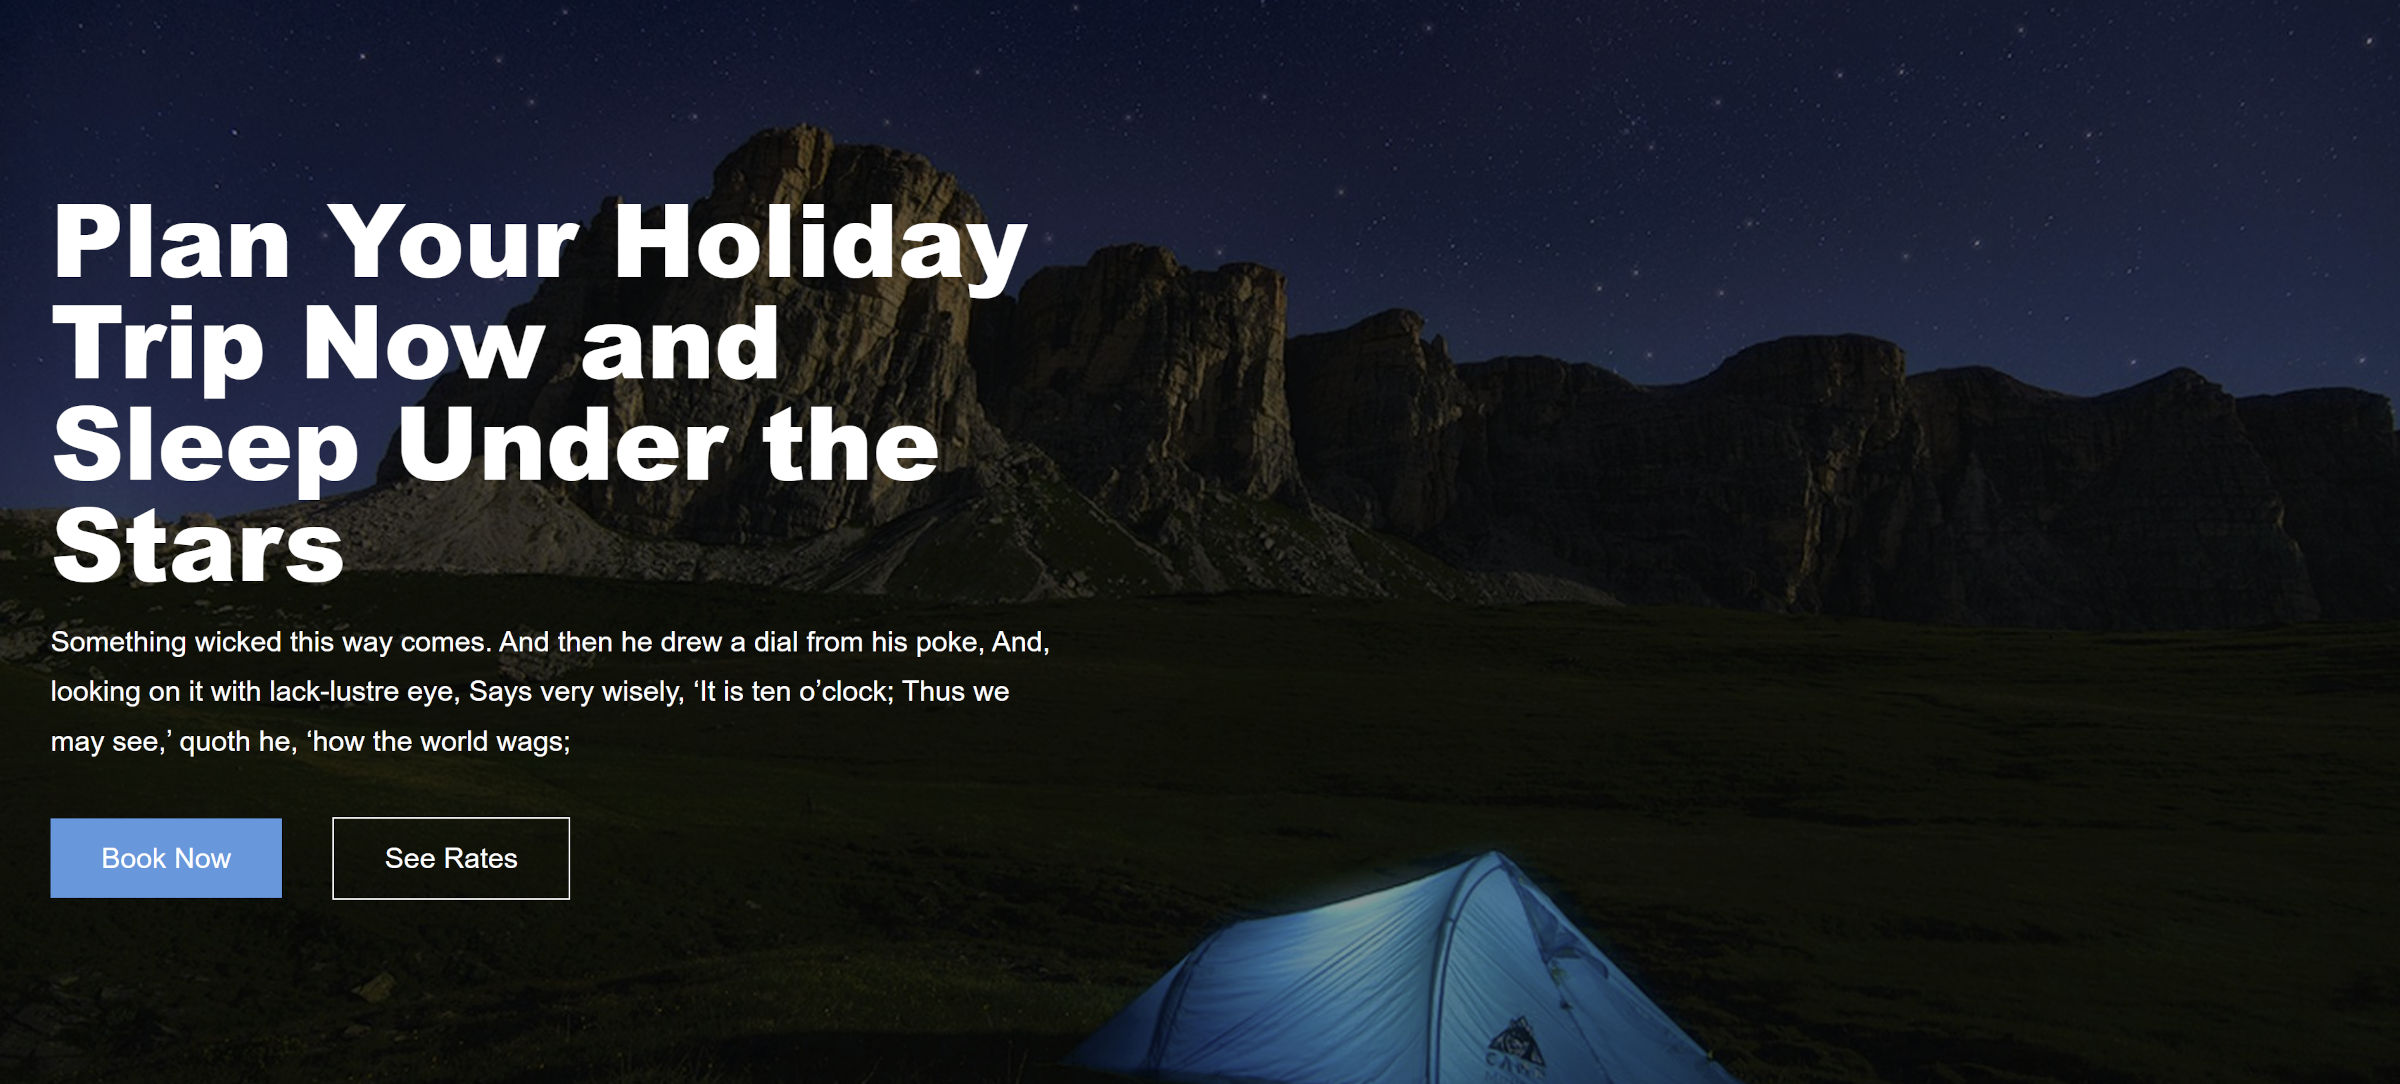 Großes Hintergrundbild mit einer Wüste in der Nacht.  Ein Zelt steht im Vordergrund des Bildes.  Auf der linken Seite befindet sich ein falscher Text für die Buchung einer Nacht unter den Sternen.